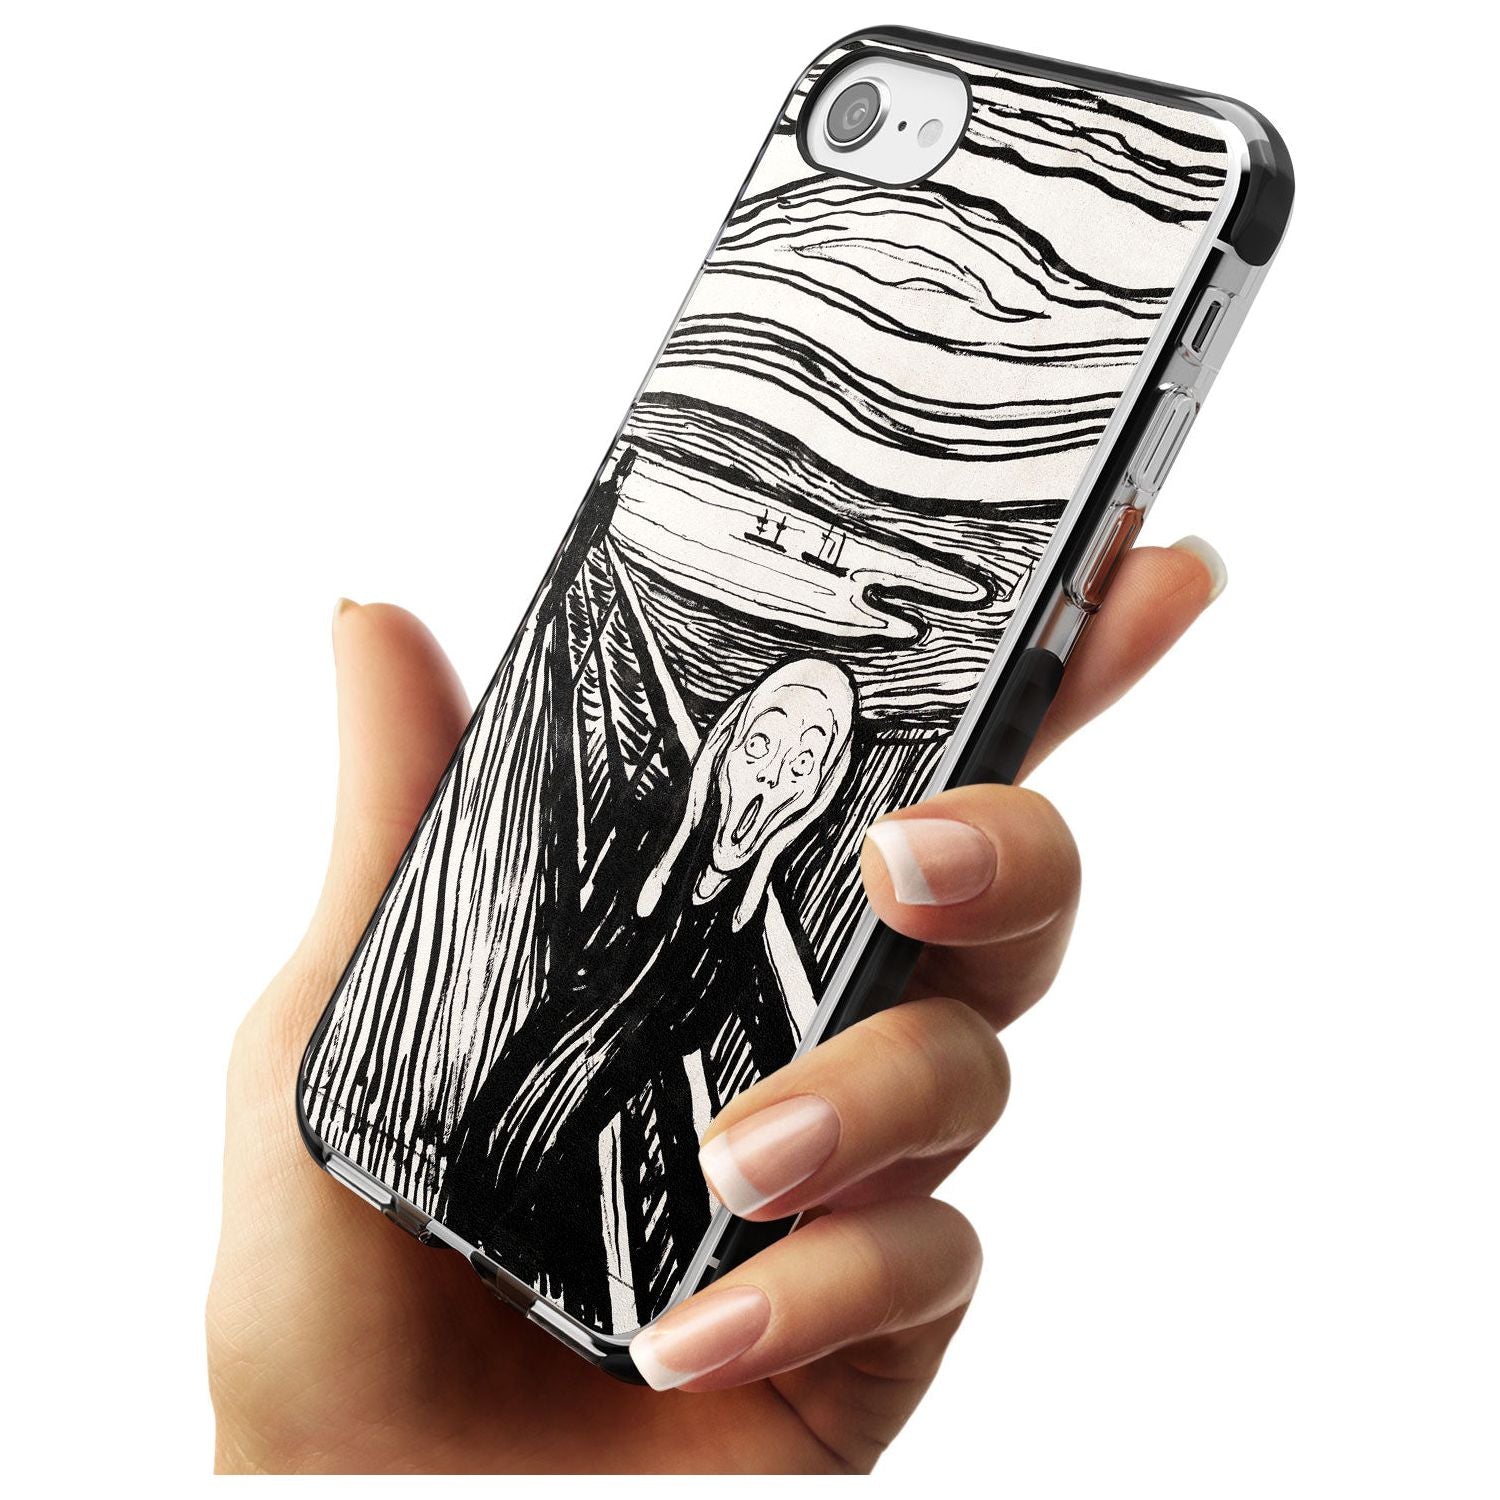 The Scream Black Impact Phone Case for iPhone SE 8 7 Plus